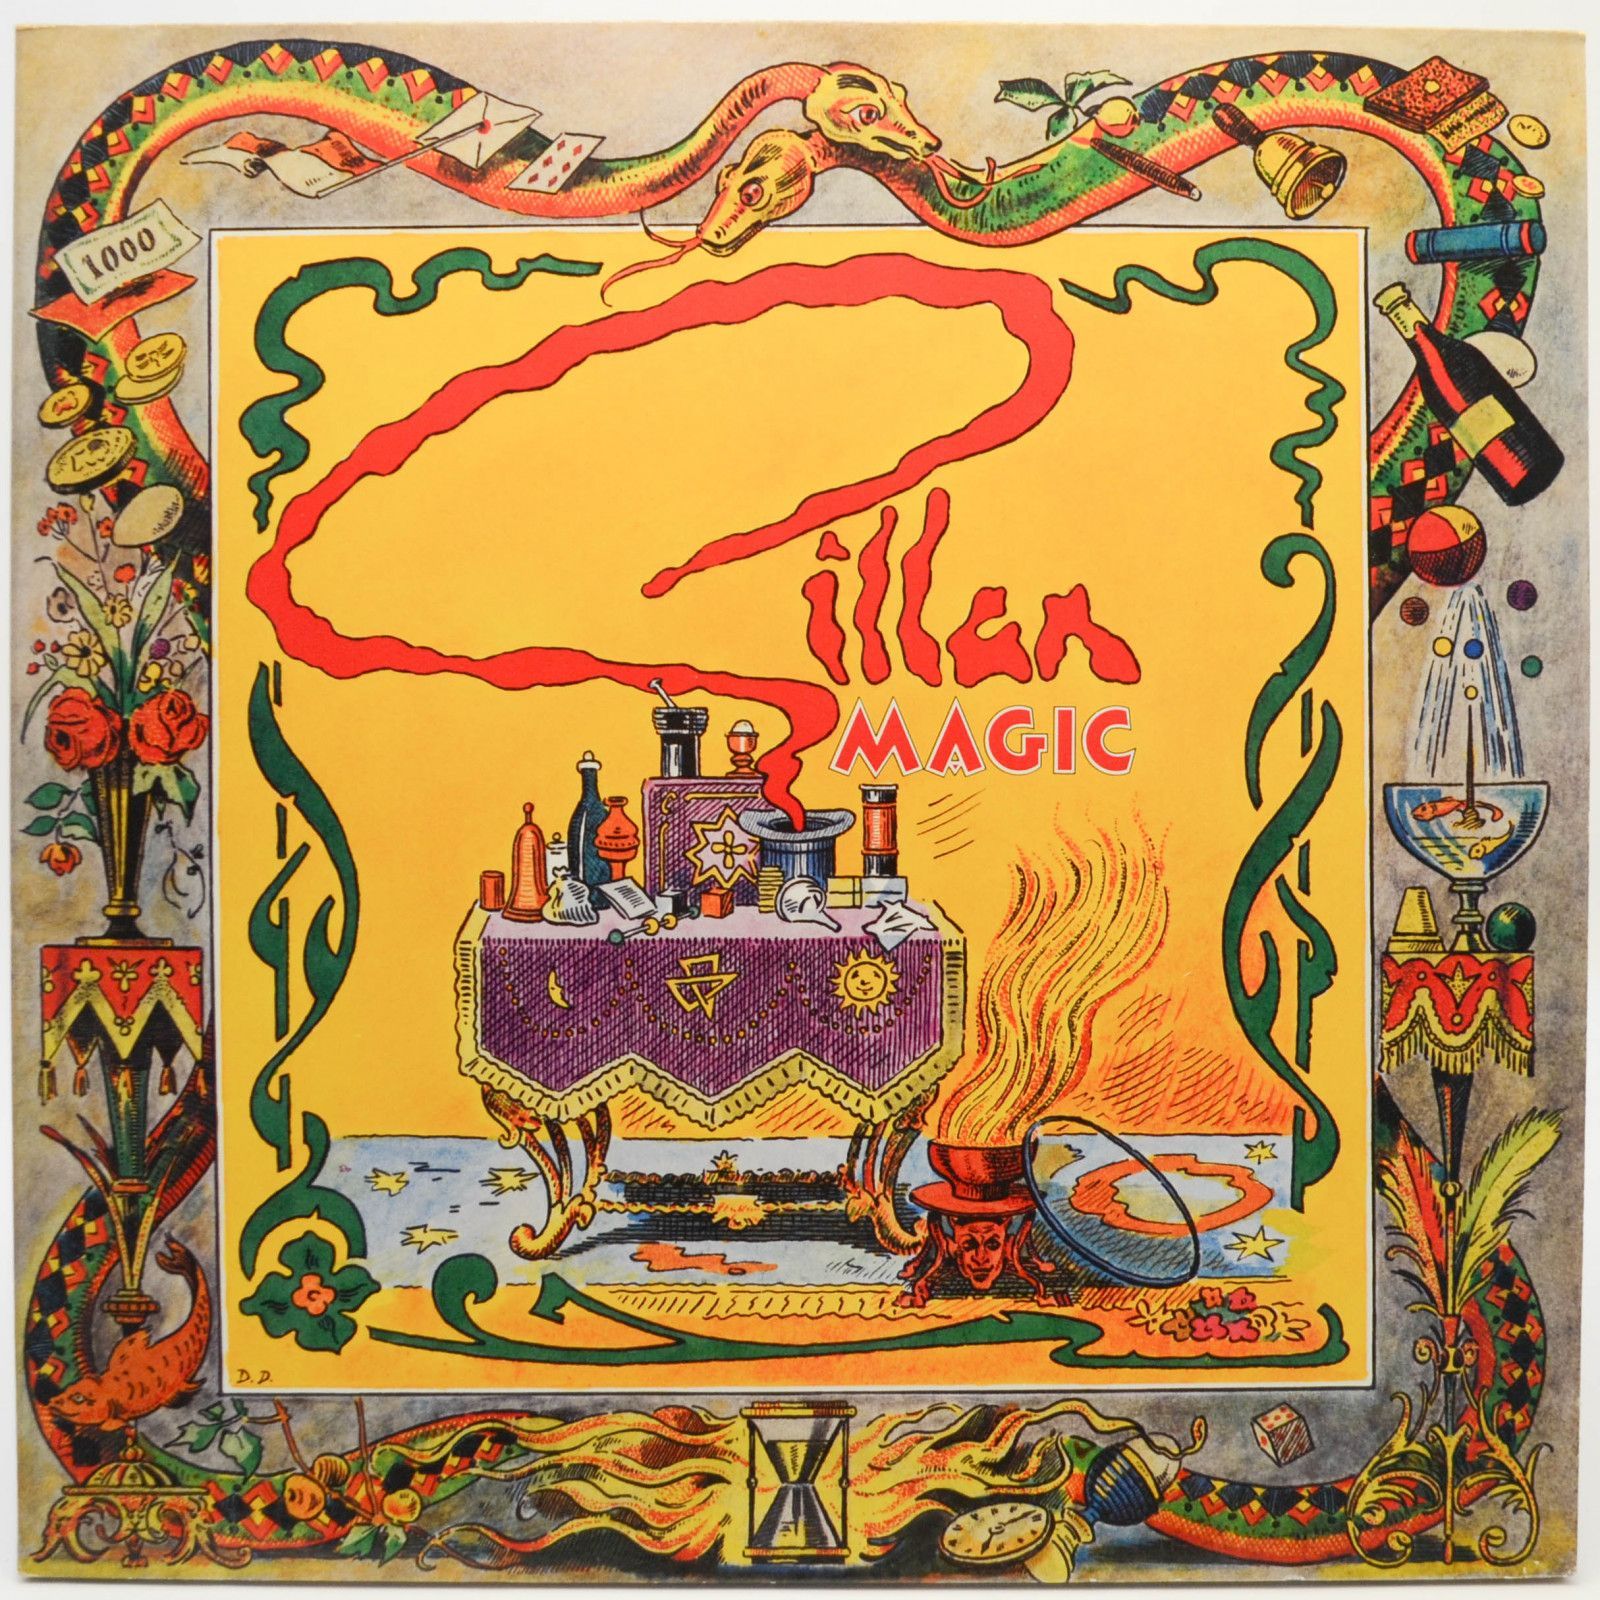 Gillan — Magic, 1982